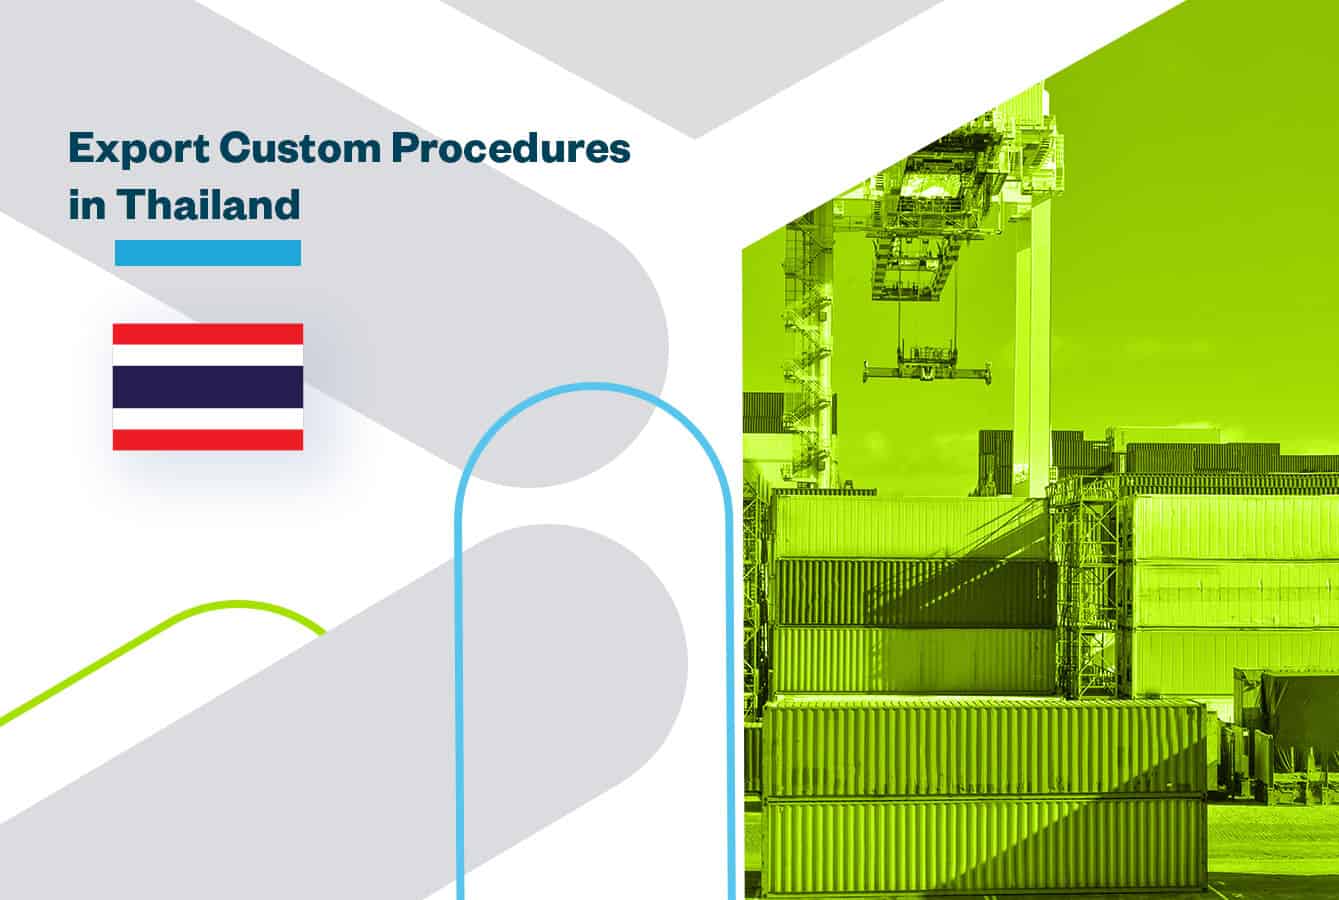 Export Customs Procedures in Thailand